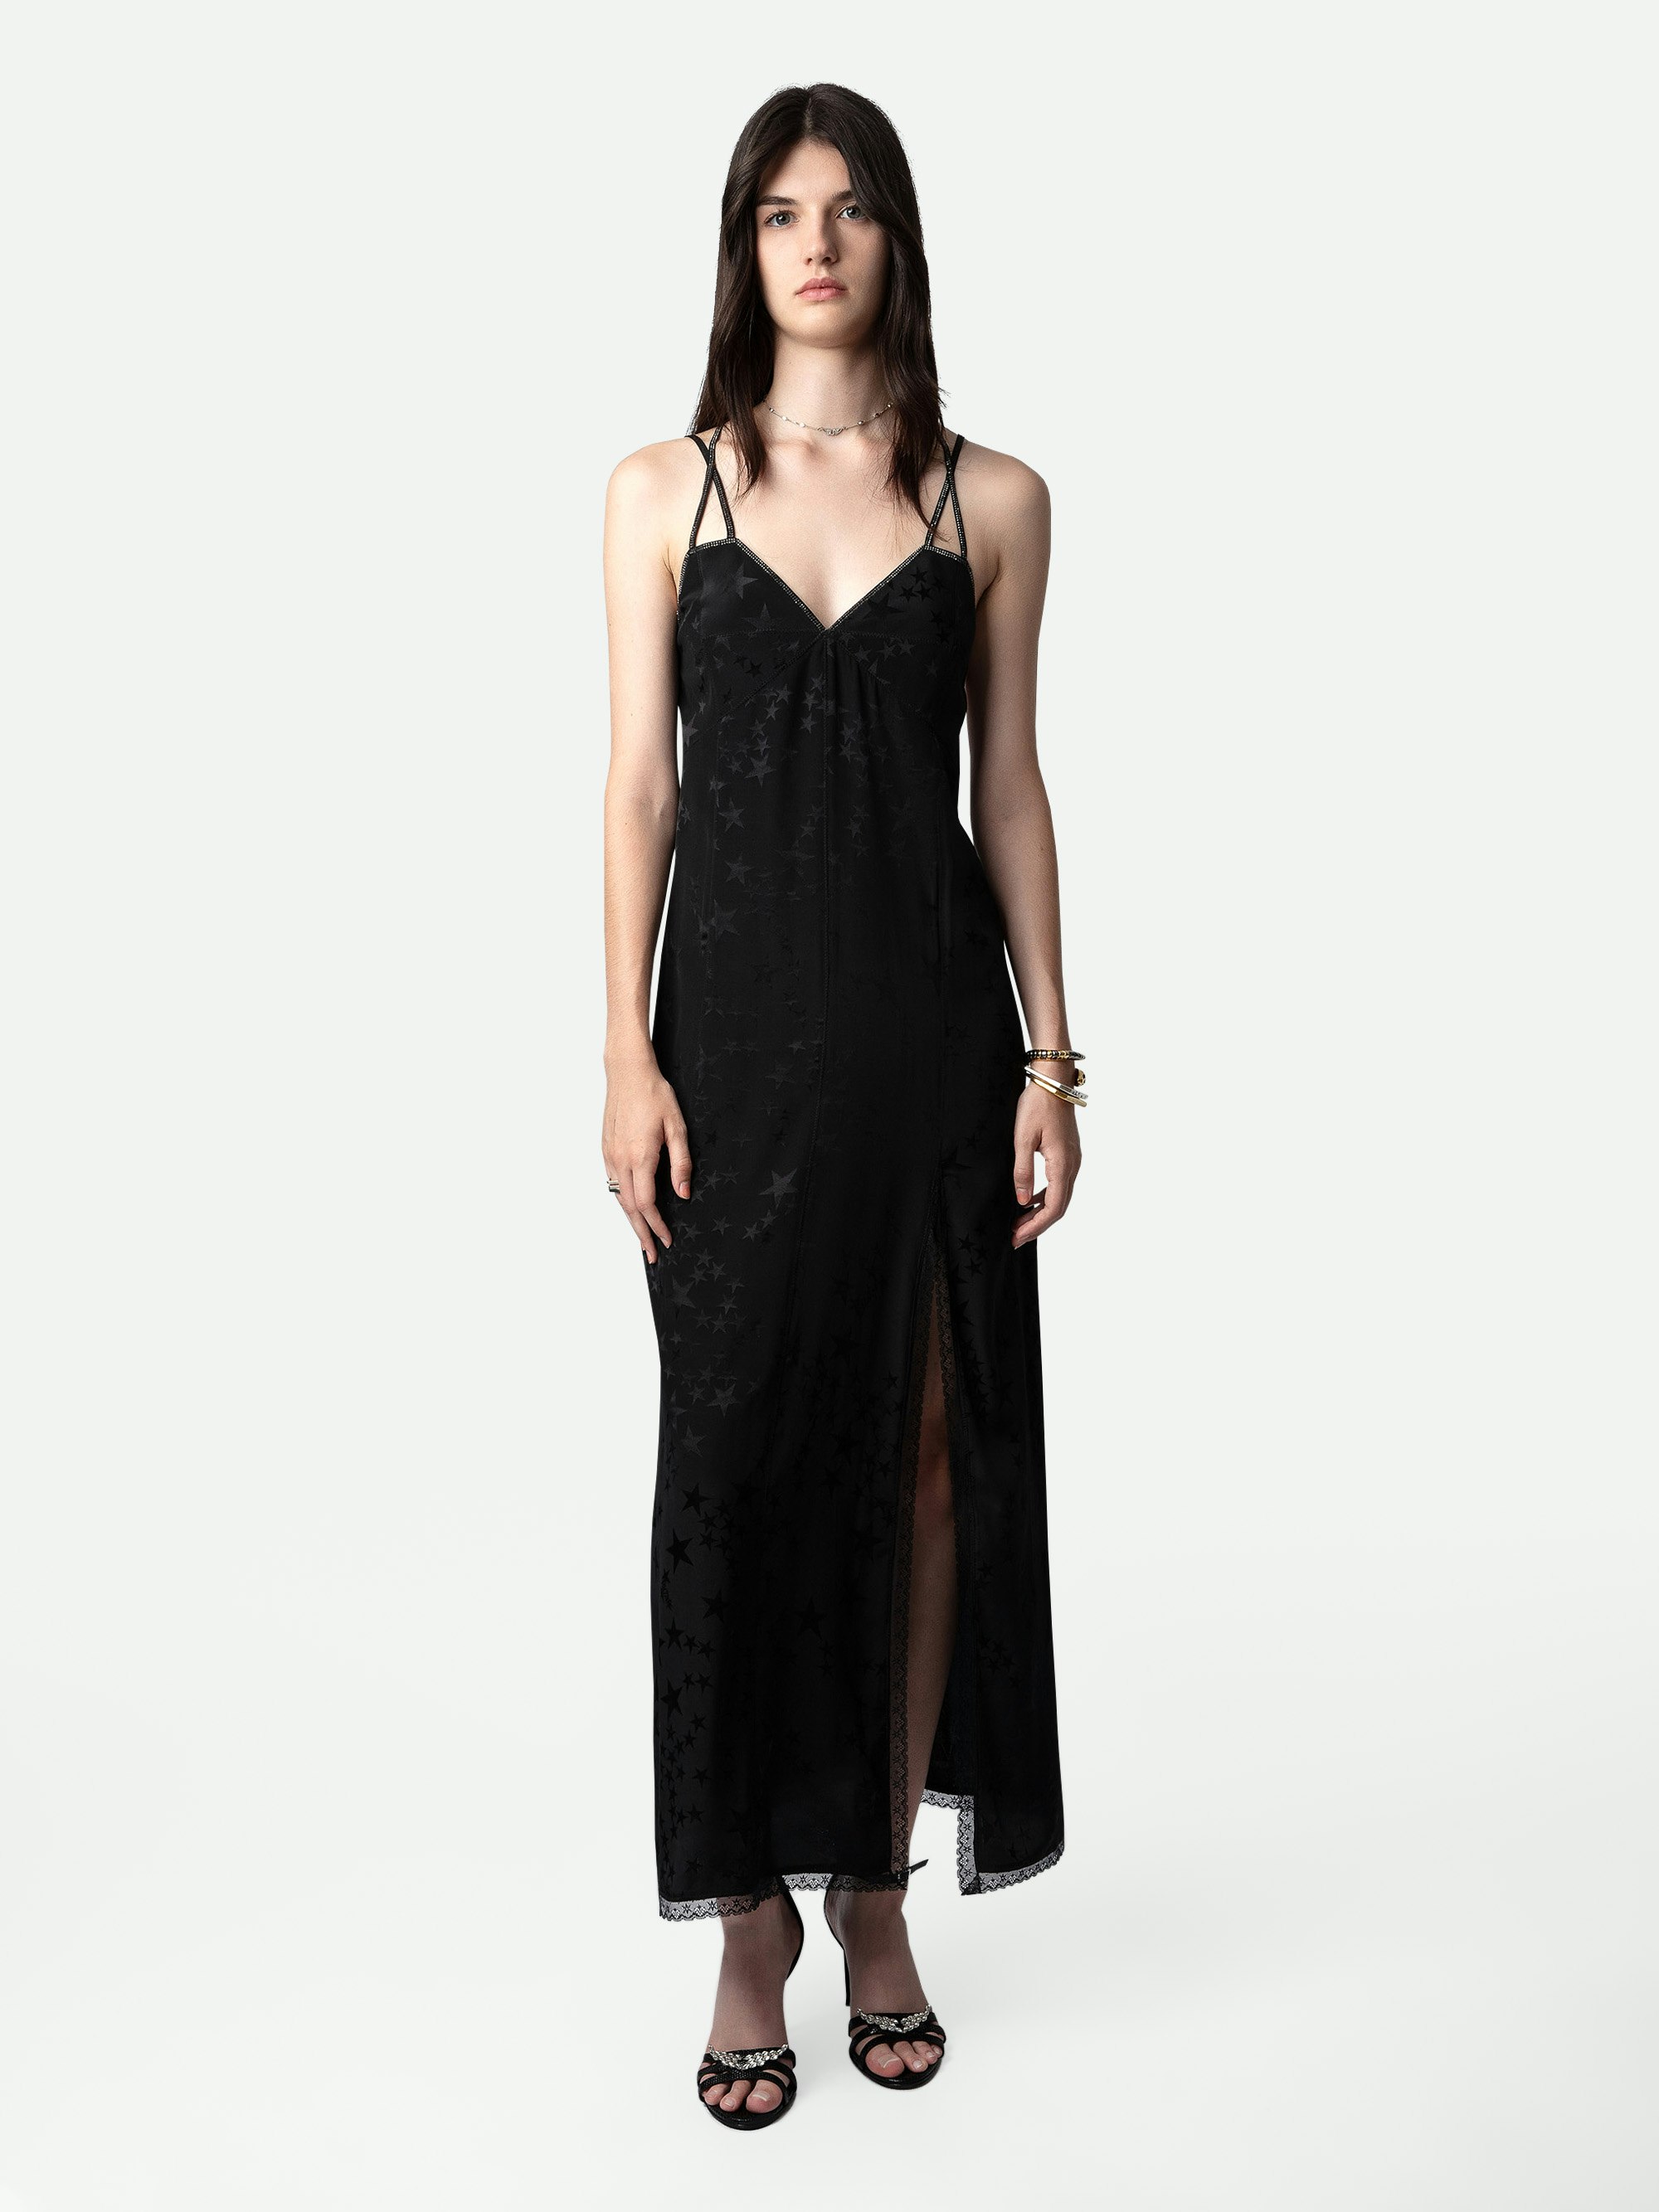 Vestido de Jacquard de Seda Rohal - Vestido lencero negro y largo de jacquard de seda con estrellas, tirantes finos cruzados con strass y bajos de encaje.